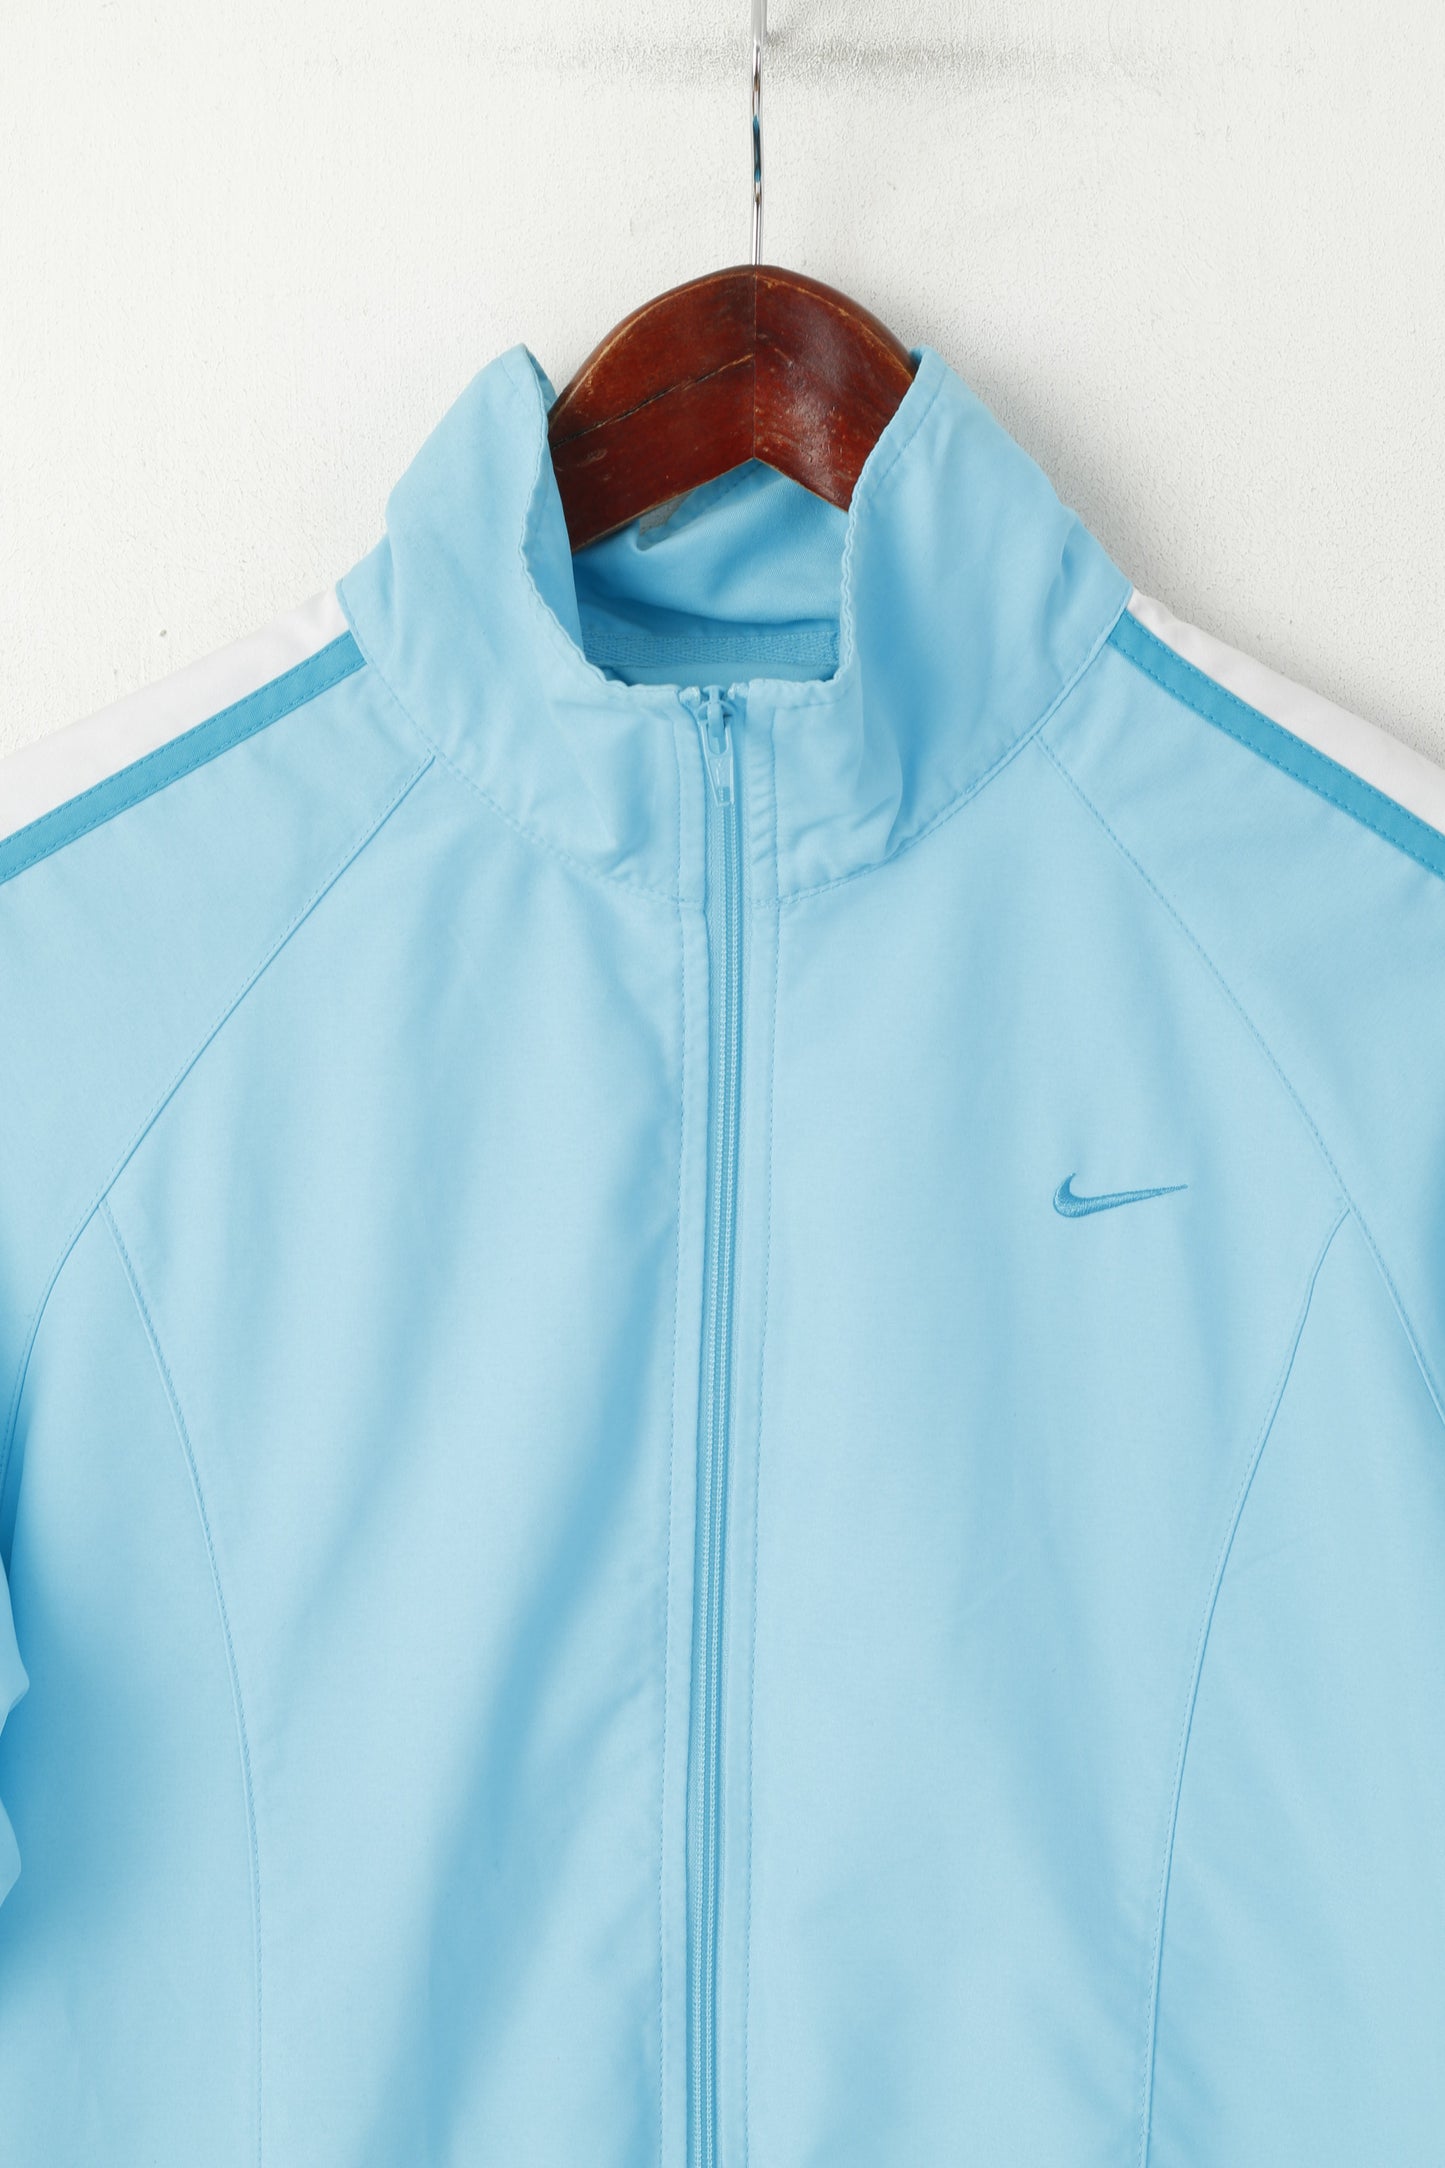 Veste Nike Femme Bleu Léger Fermeture Éclair Complète Sport Traning Track Top